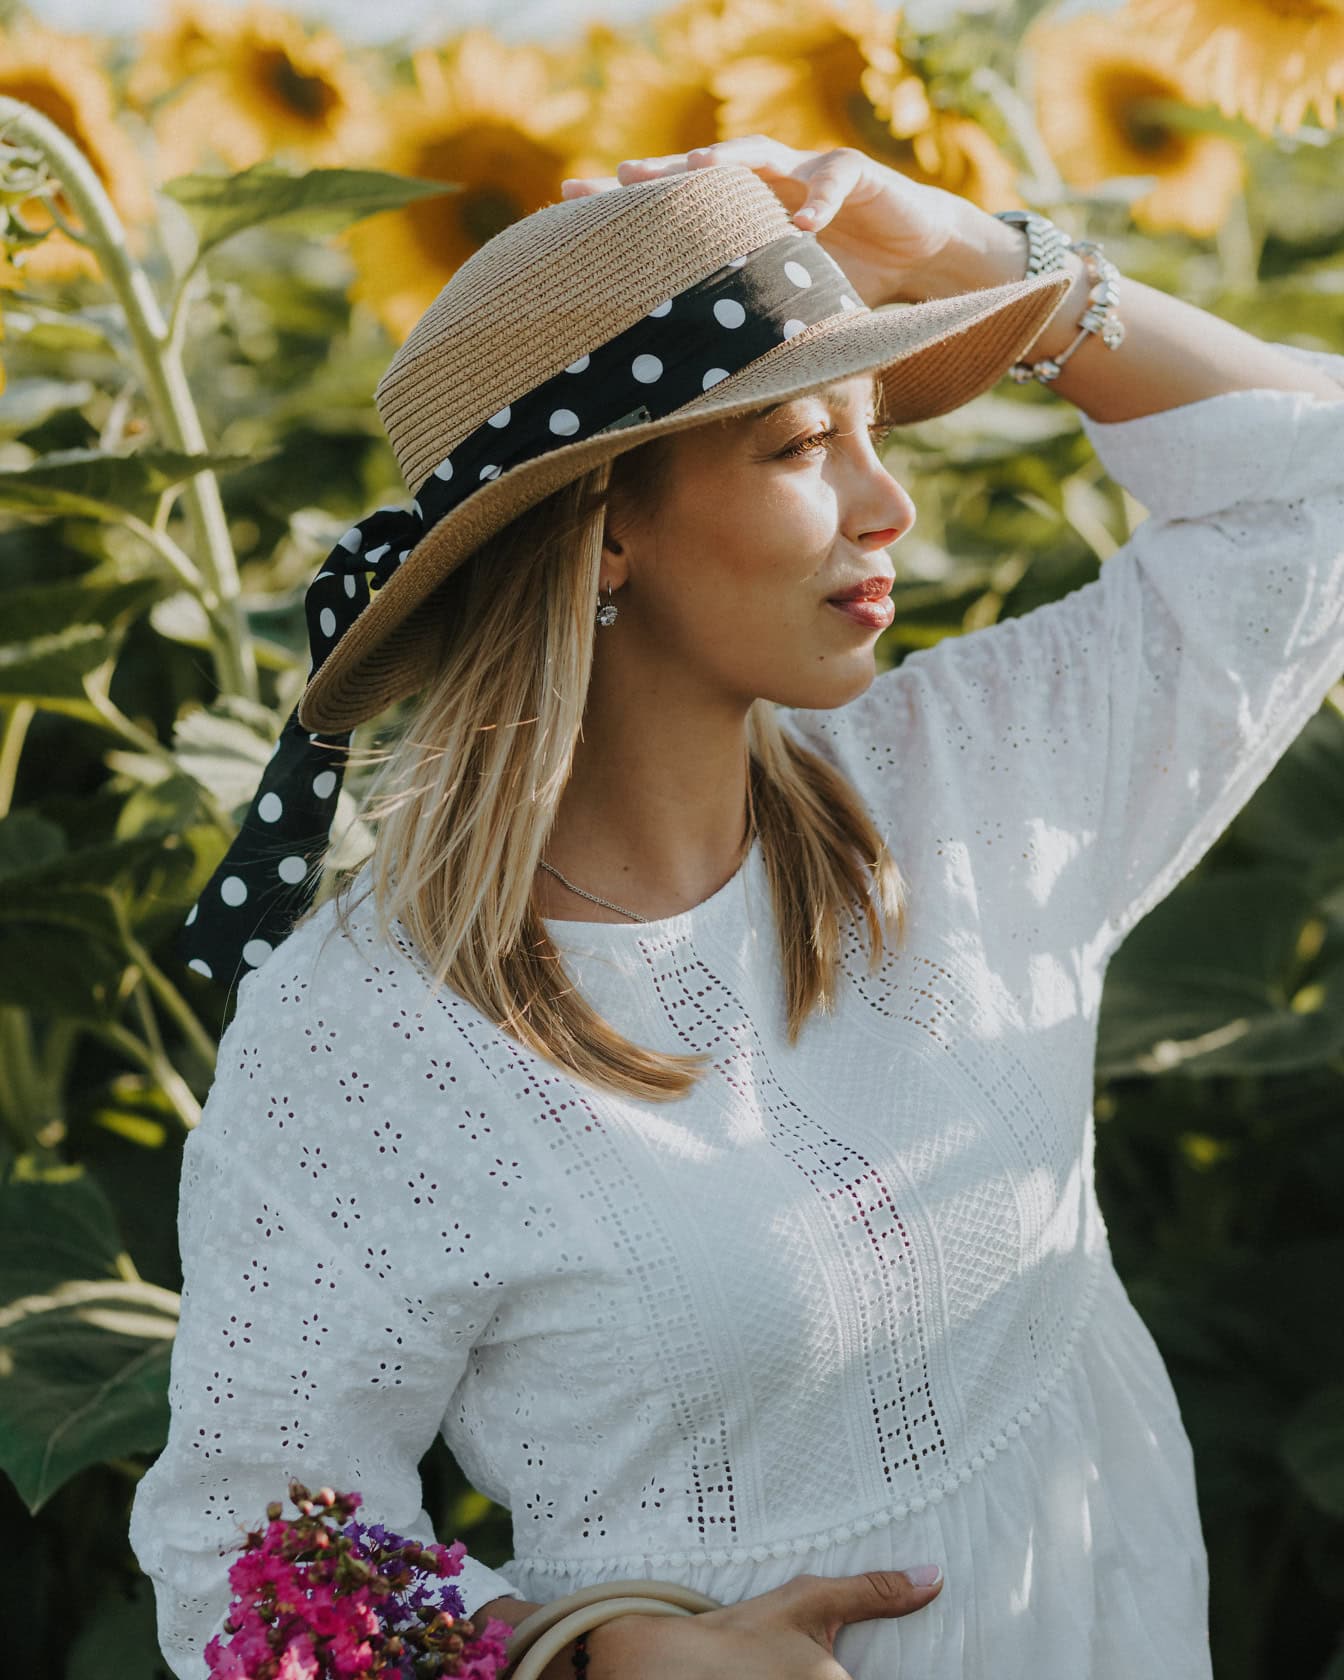 Portrett av en ung kvinne på landet iført hatt i en åker med solsikker